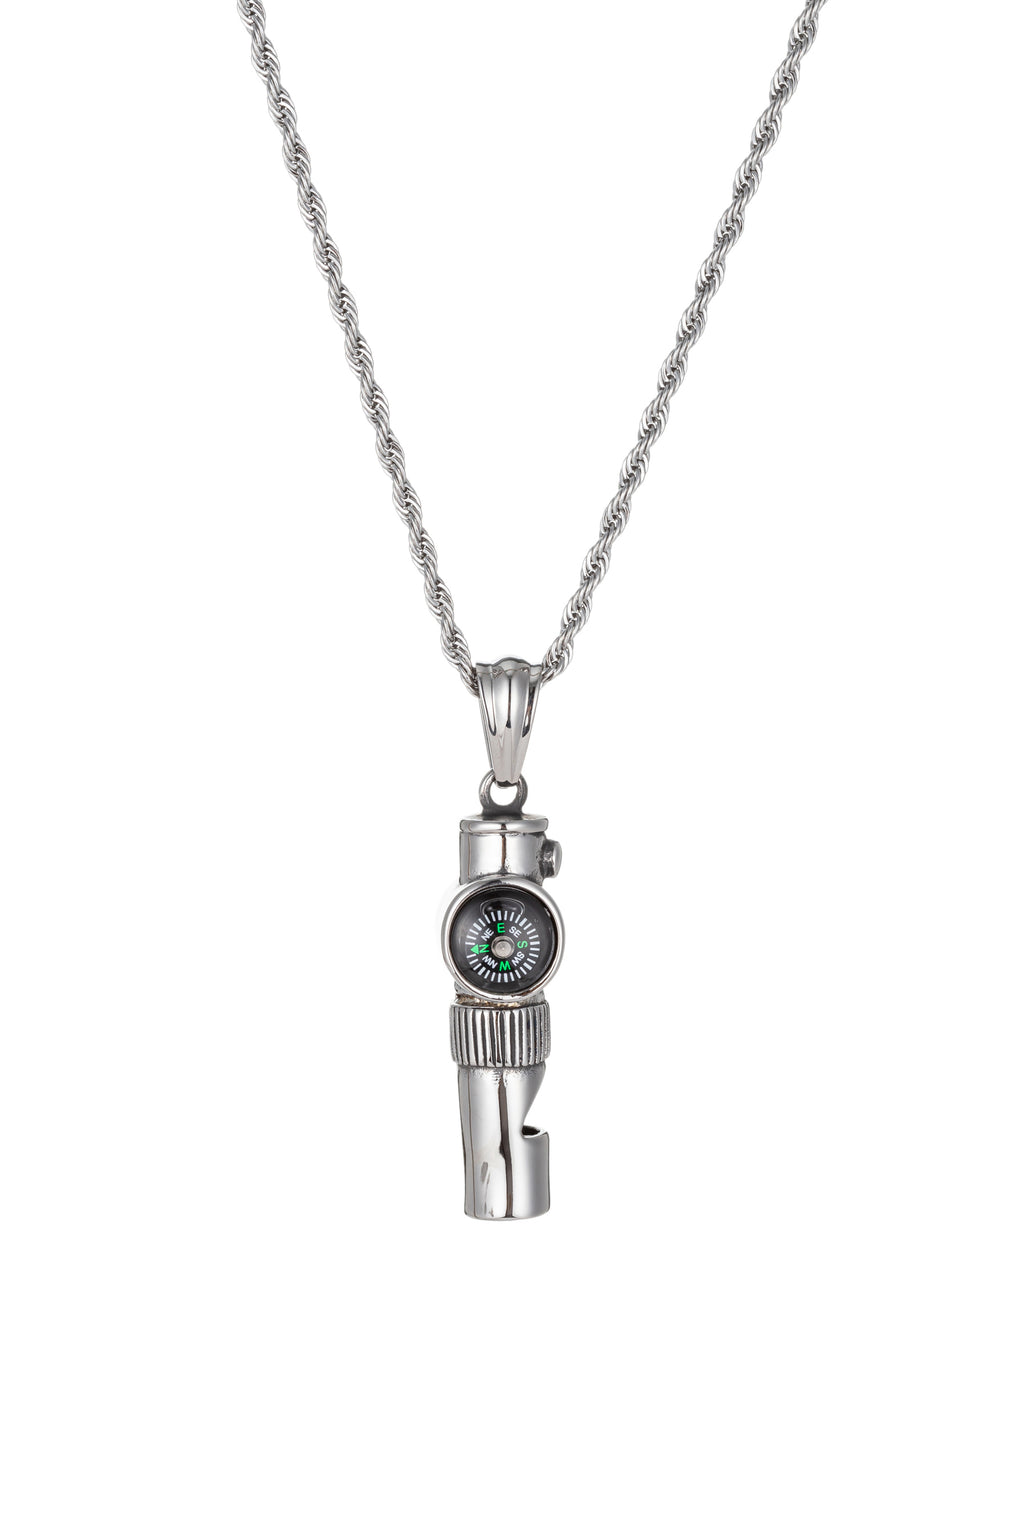 Silver titanium compass pendant necklace.